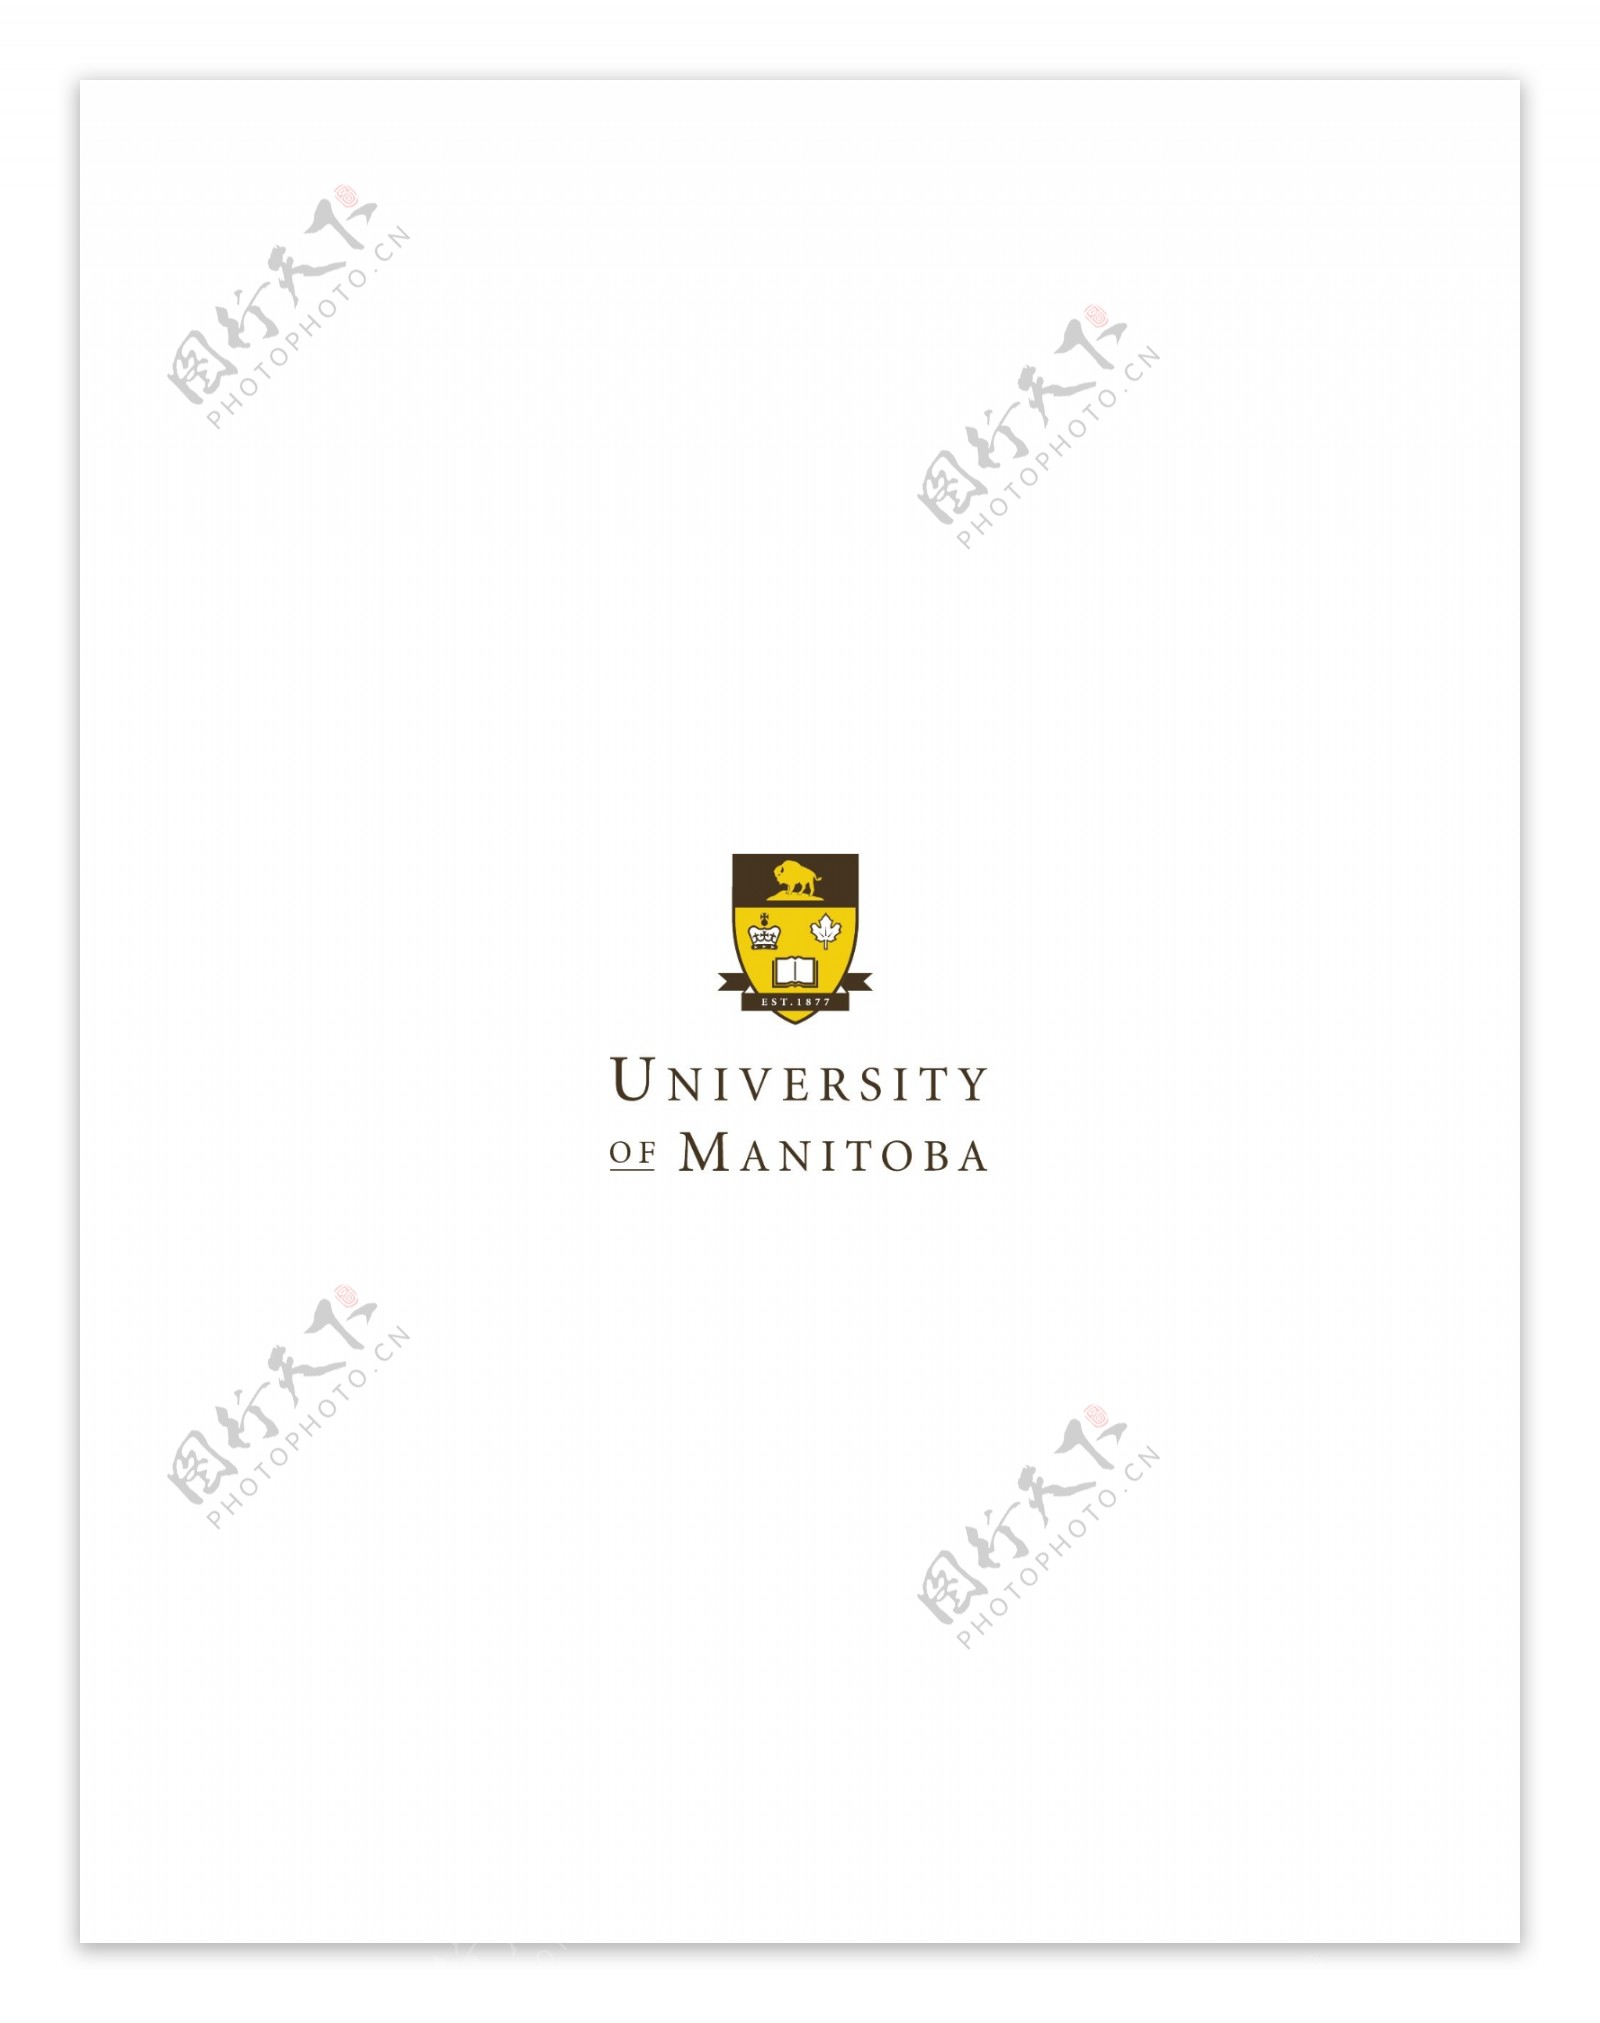 UniversityofManitoba2logo设计欣赏UniversityofManitoba2世界名校LOGO下载标志设计欣赏